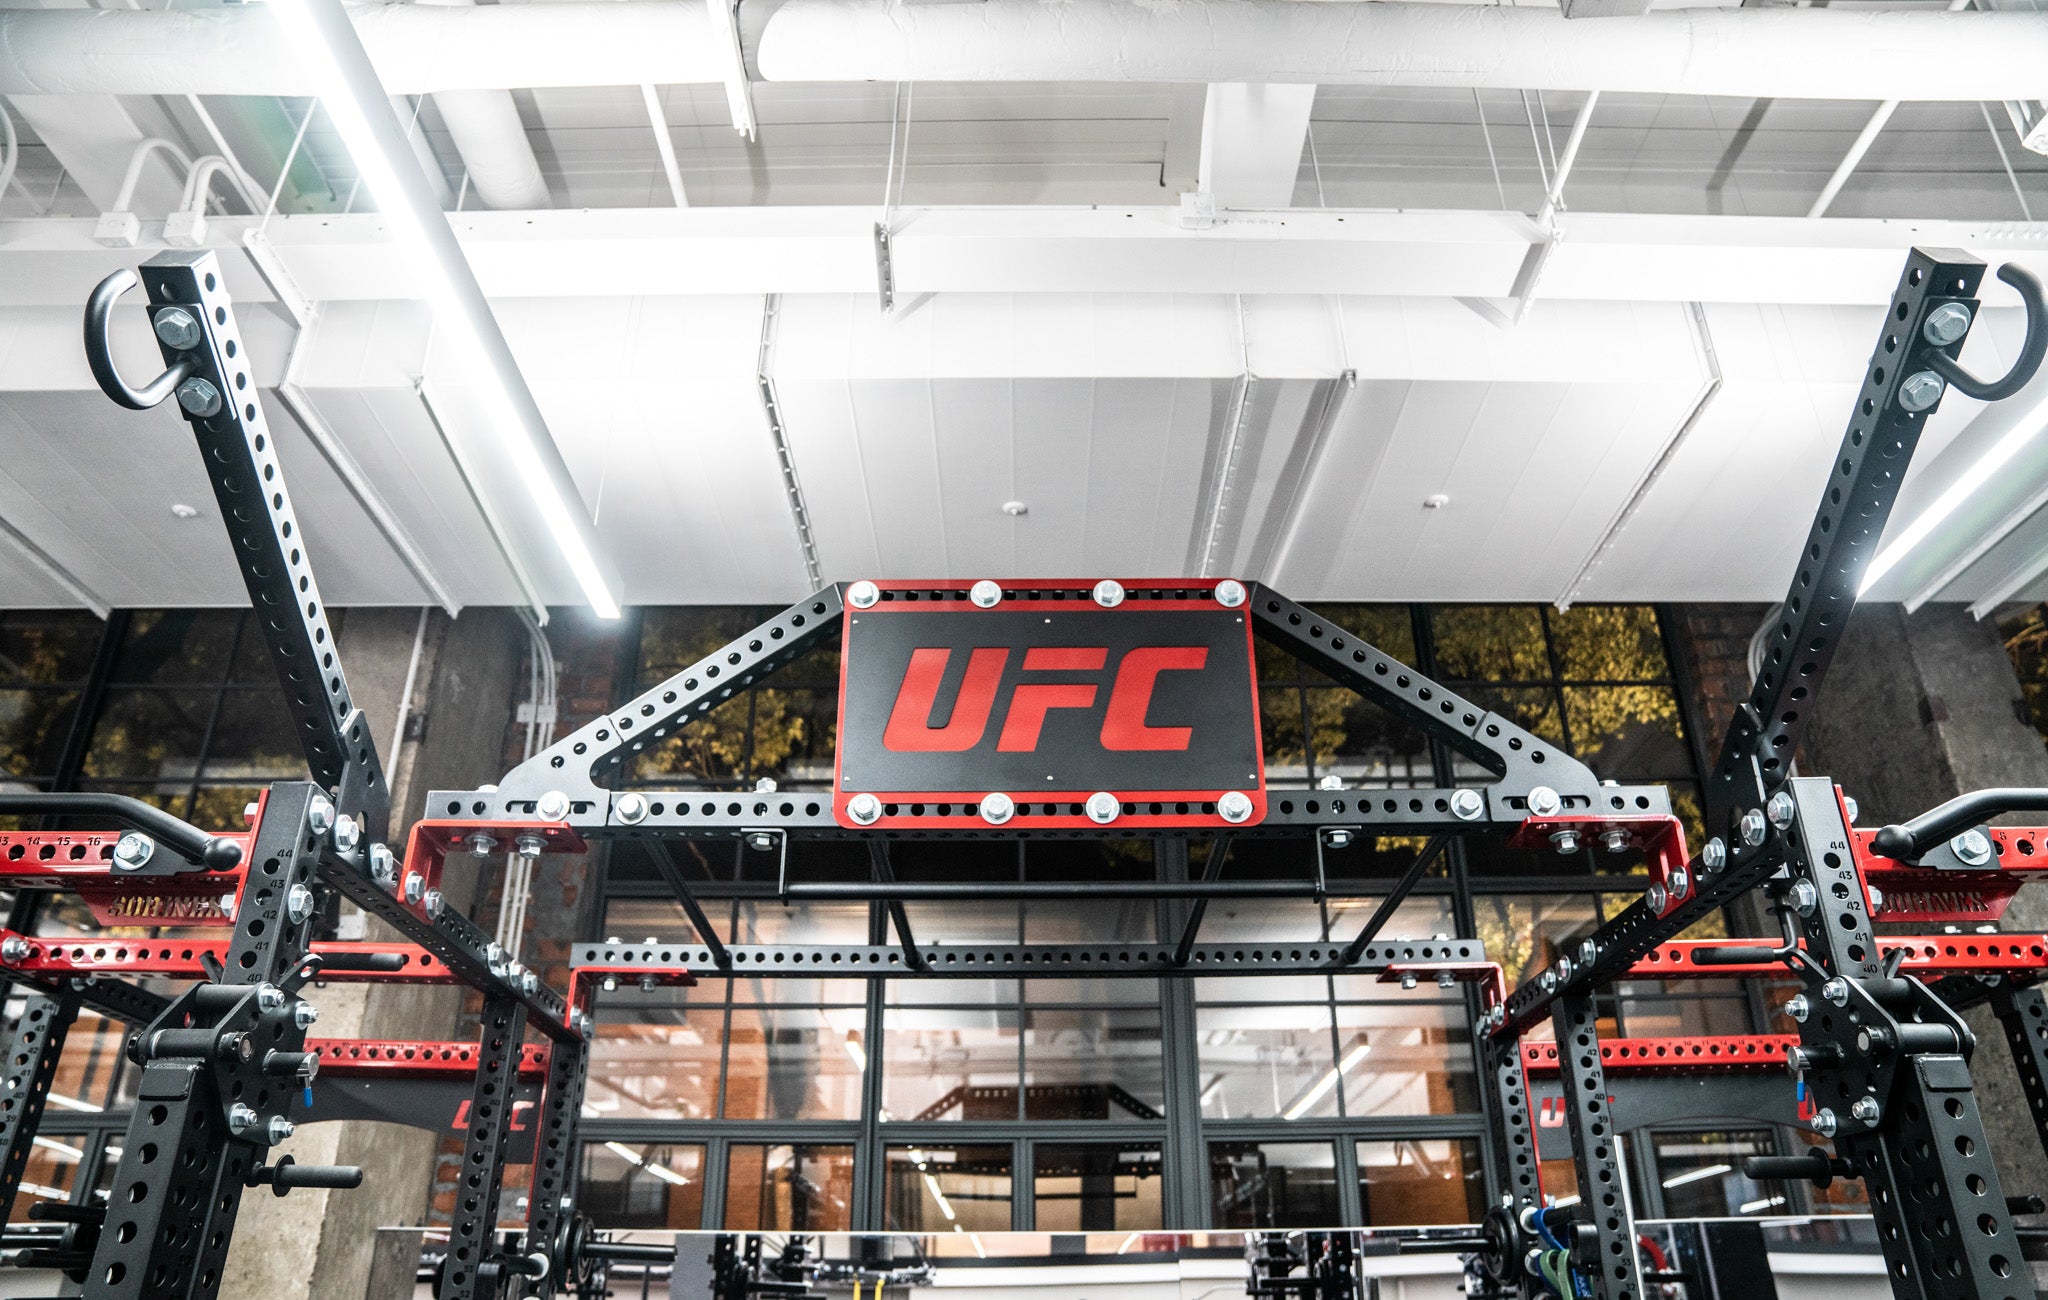 Sorinex UFC Facility